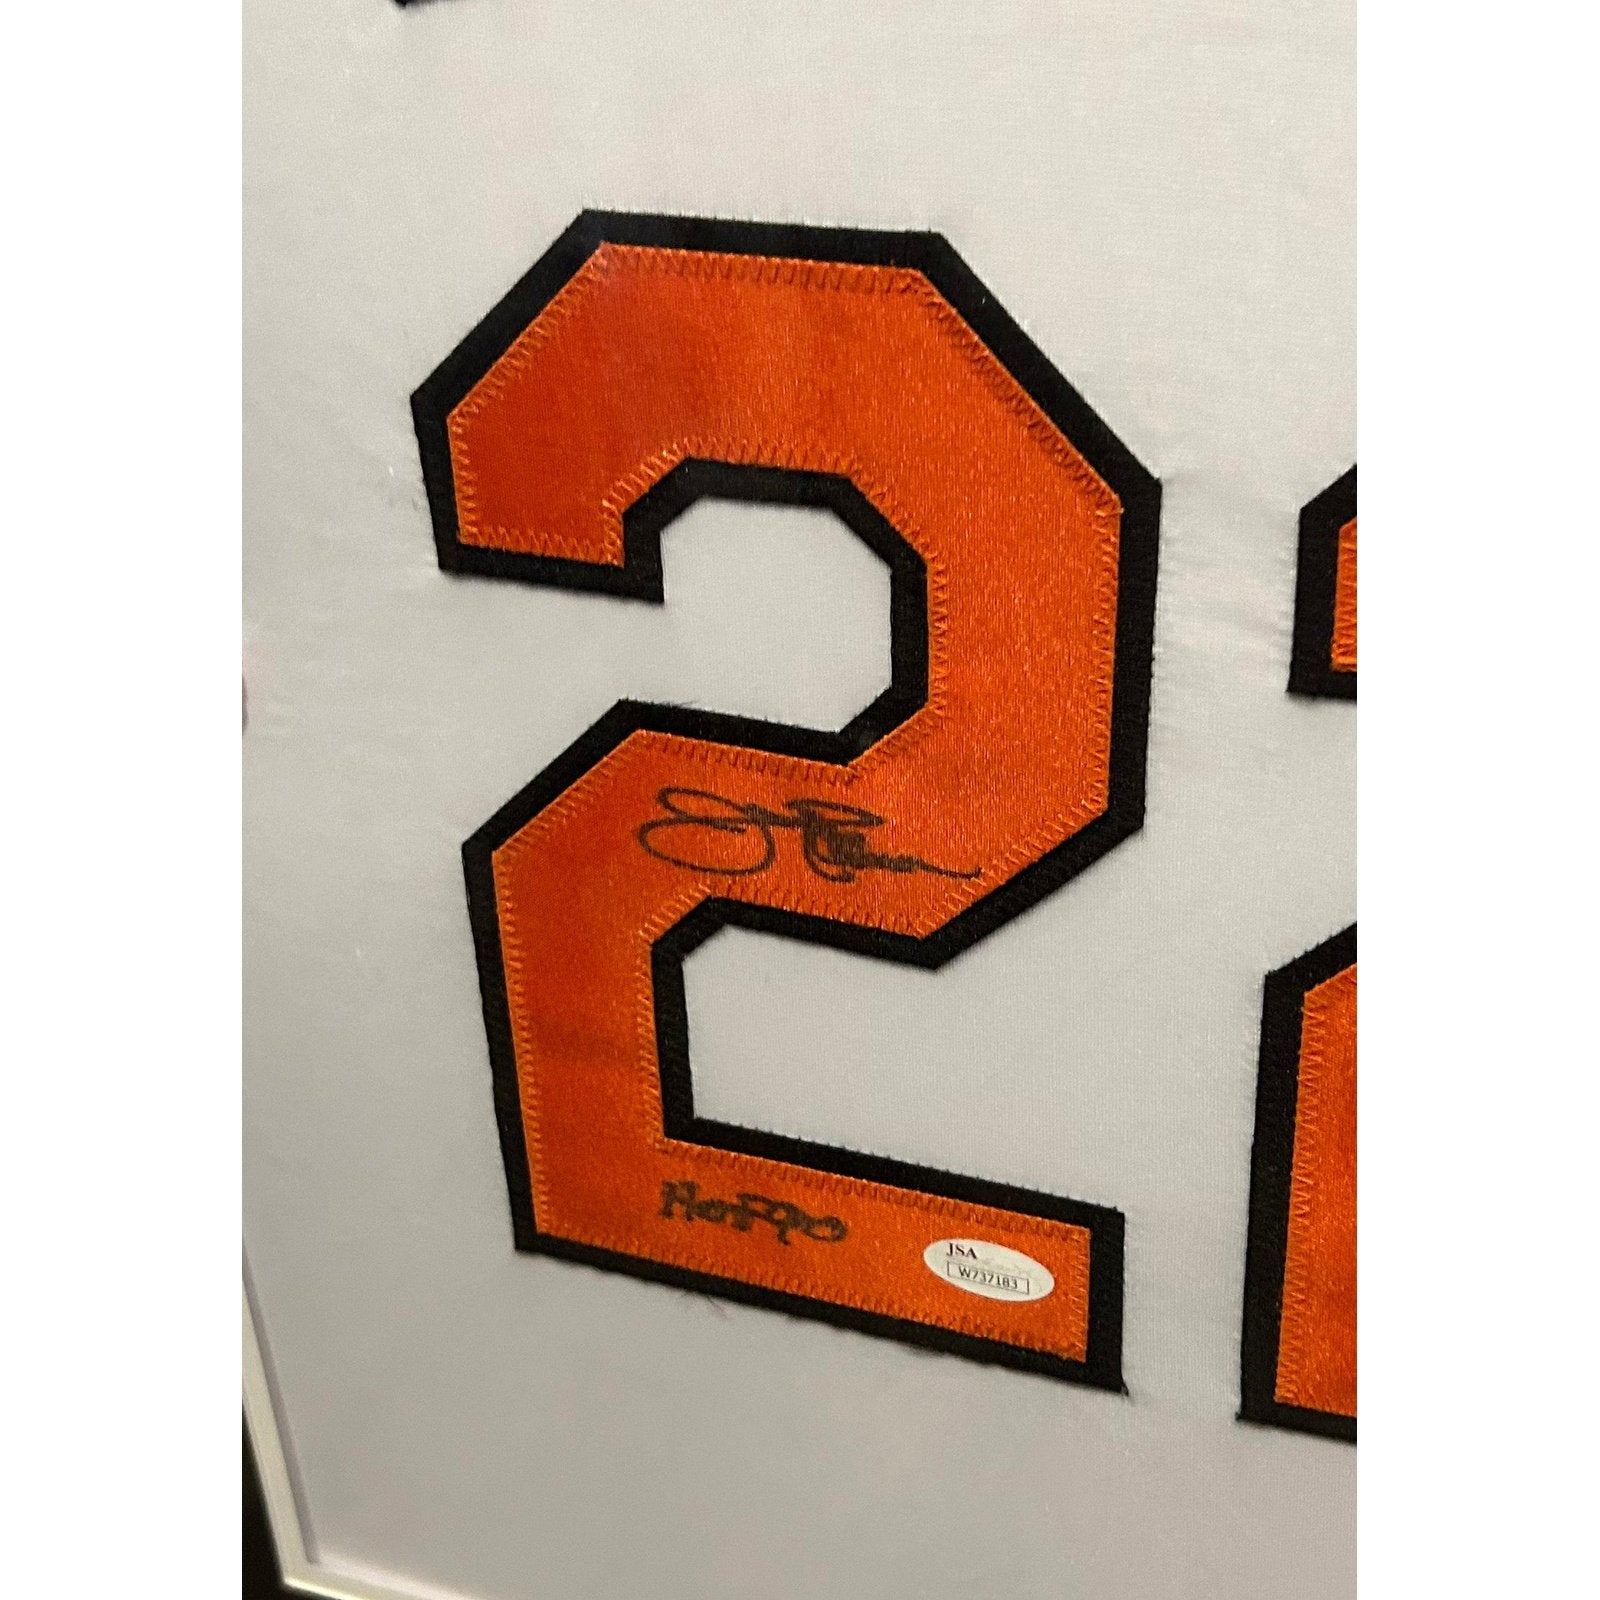 Jim Palmer Framed Signed Baltimore Orioles Jersey JSA Autographed